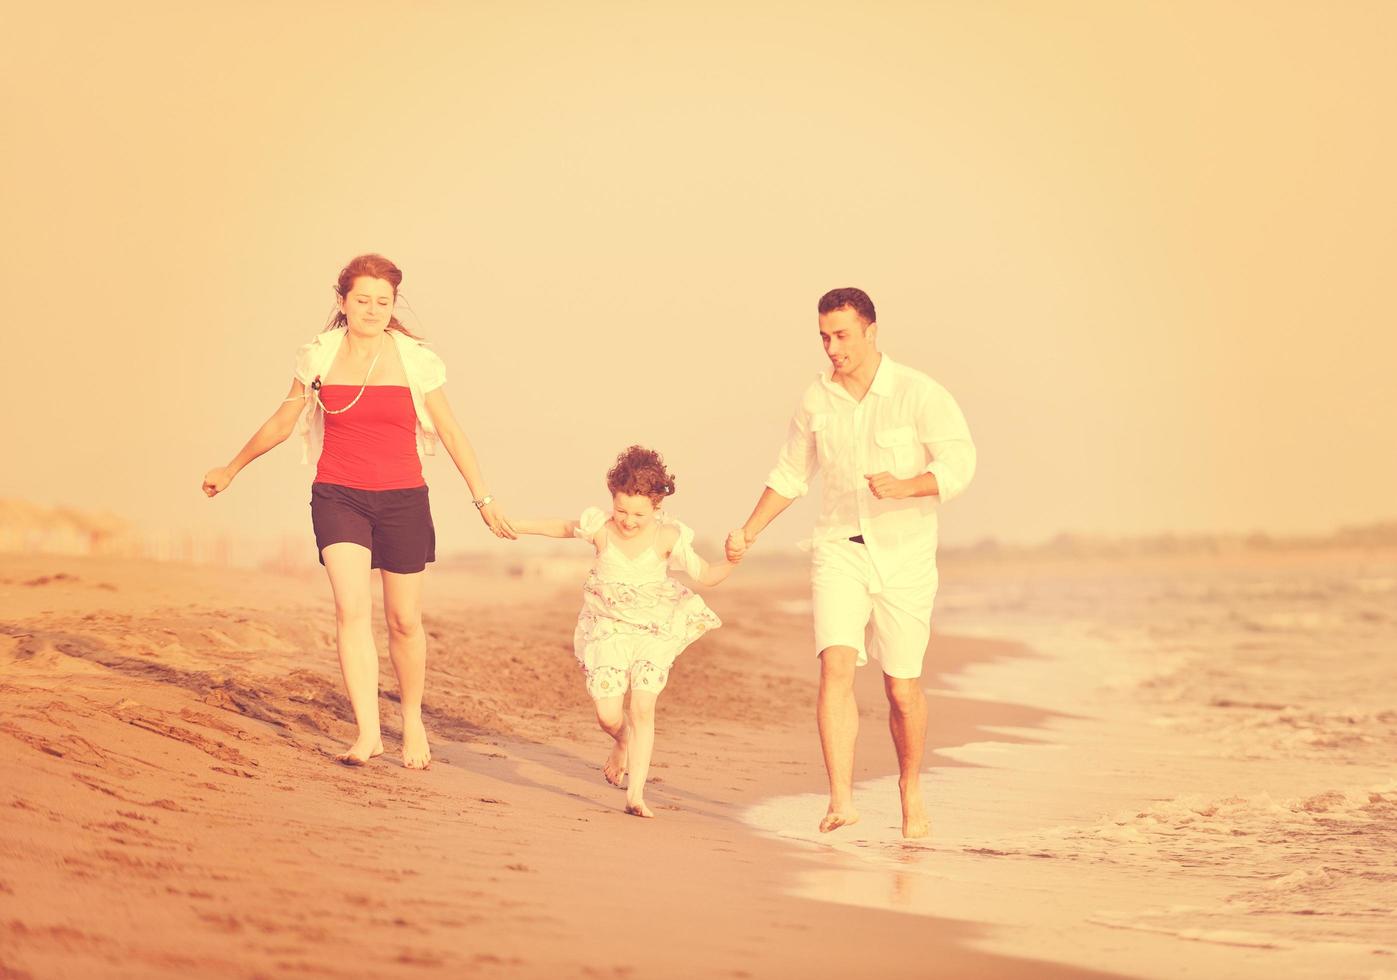 contento giovane famiglia avere divertimento su spiaggia foto